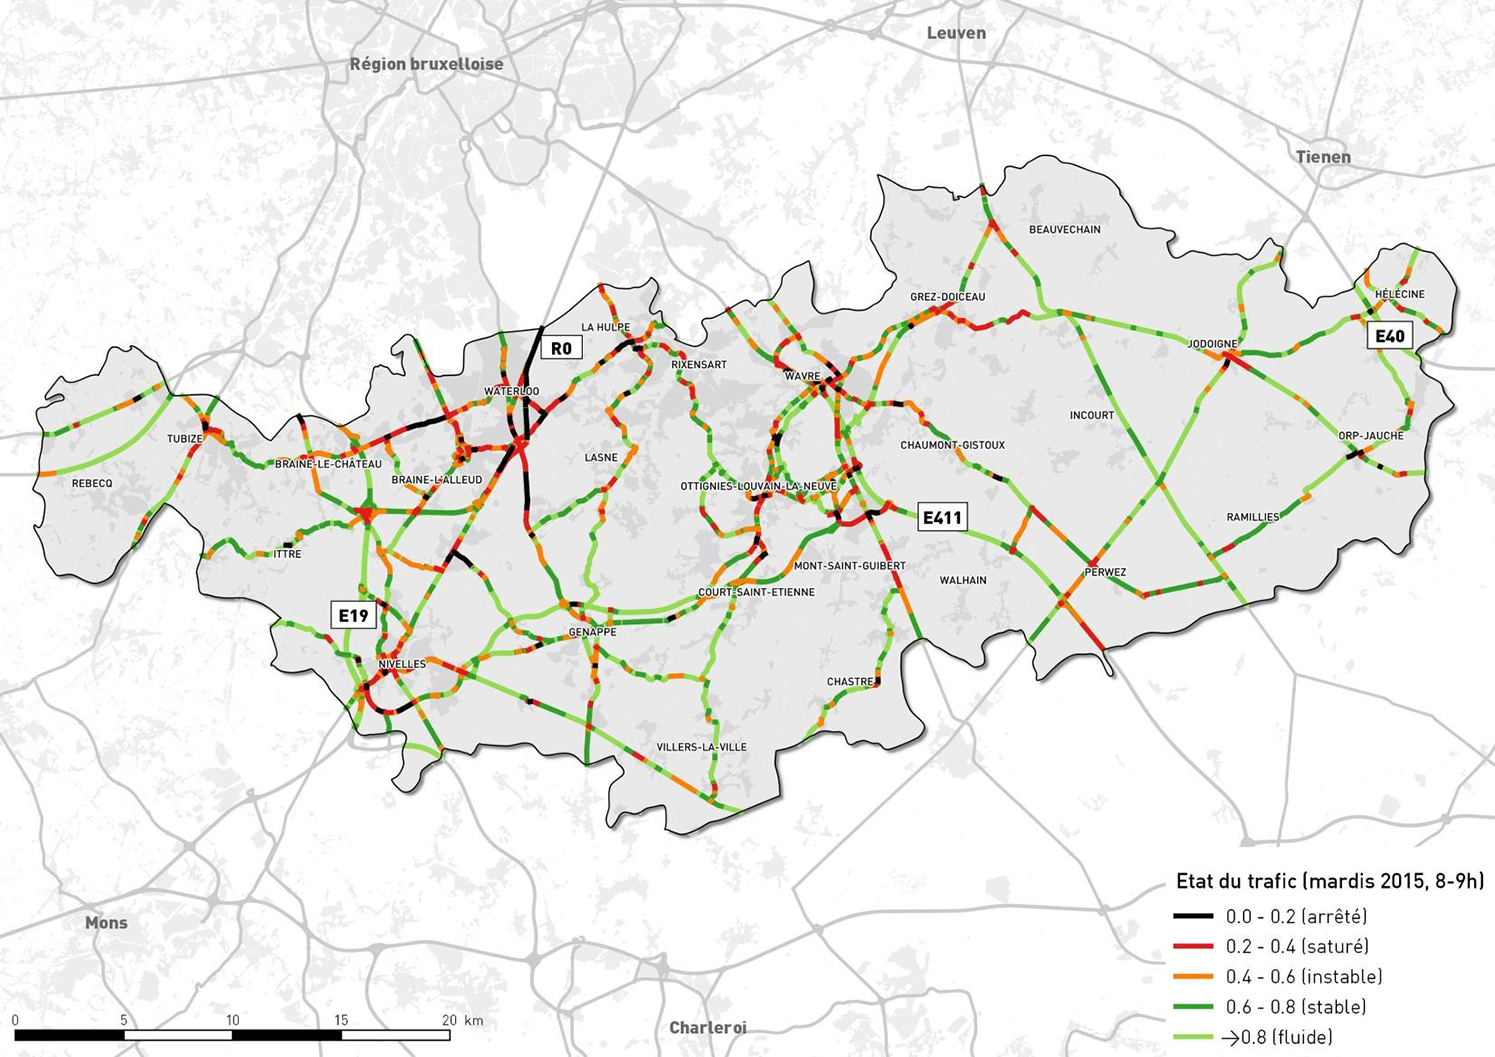 Etat de la congestion (mardis 2015, 8-9h) - source données TomTom